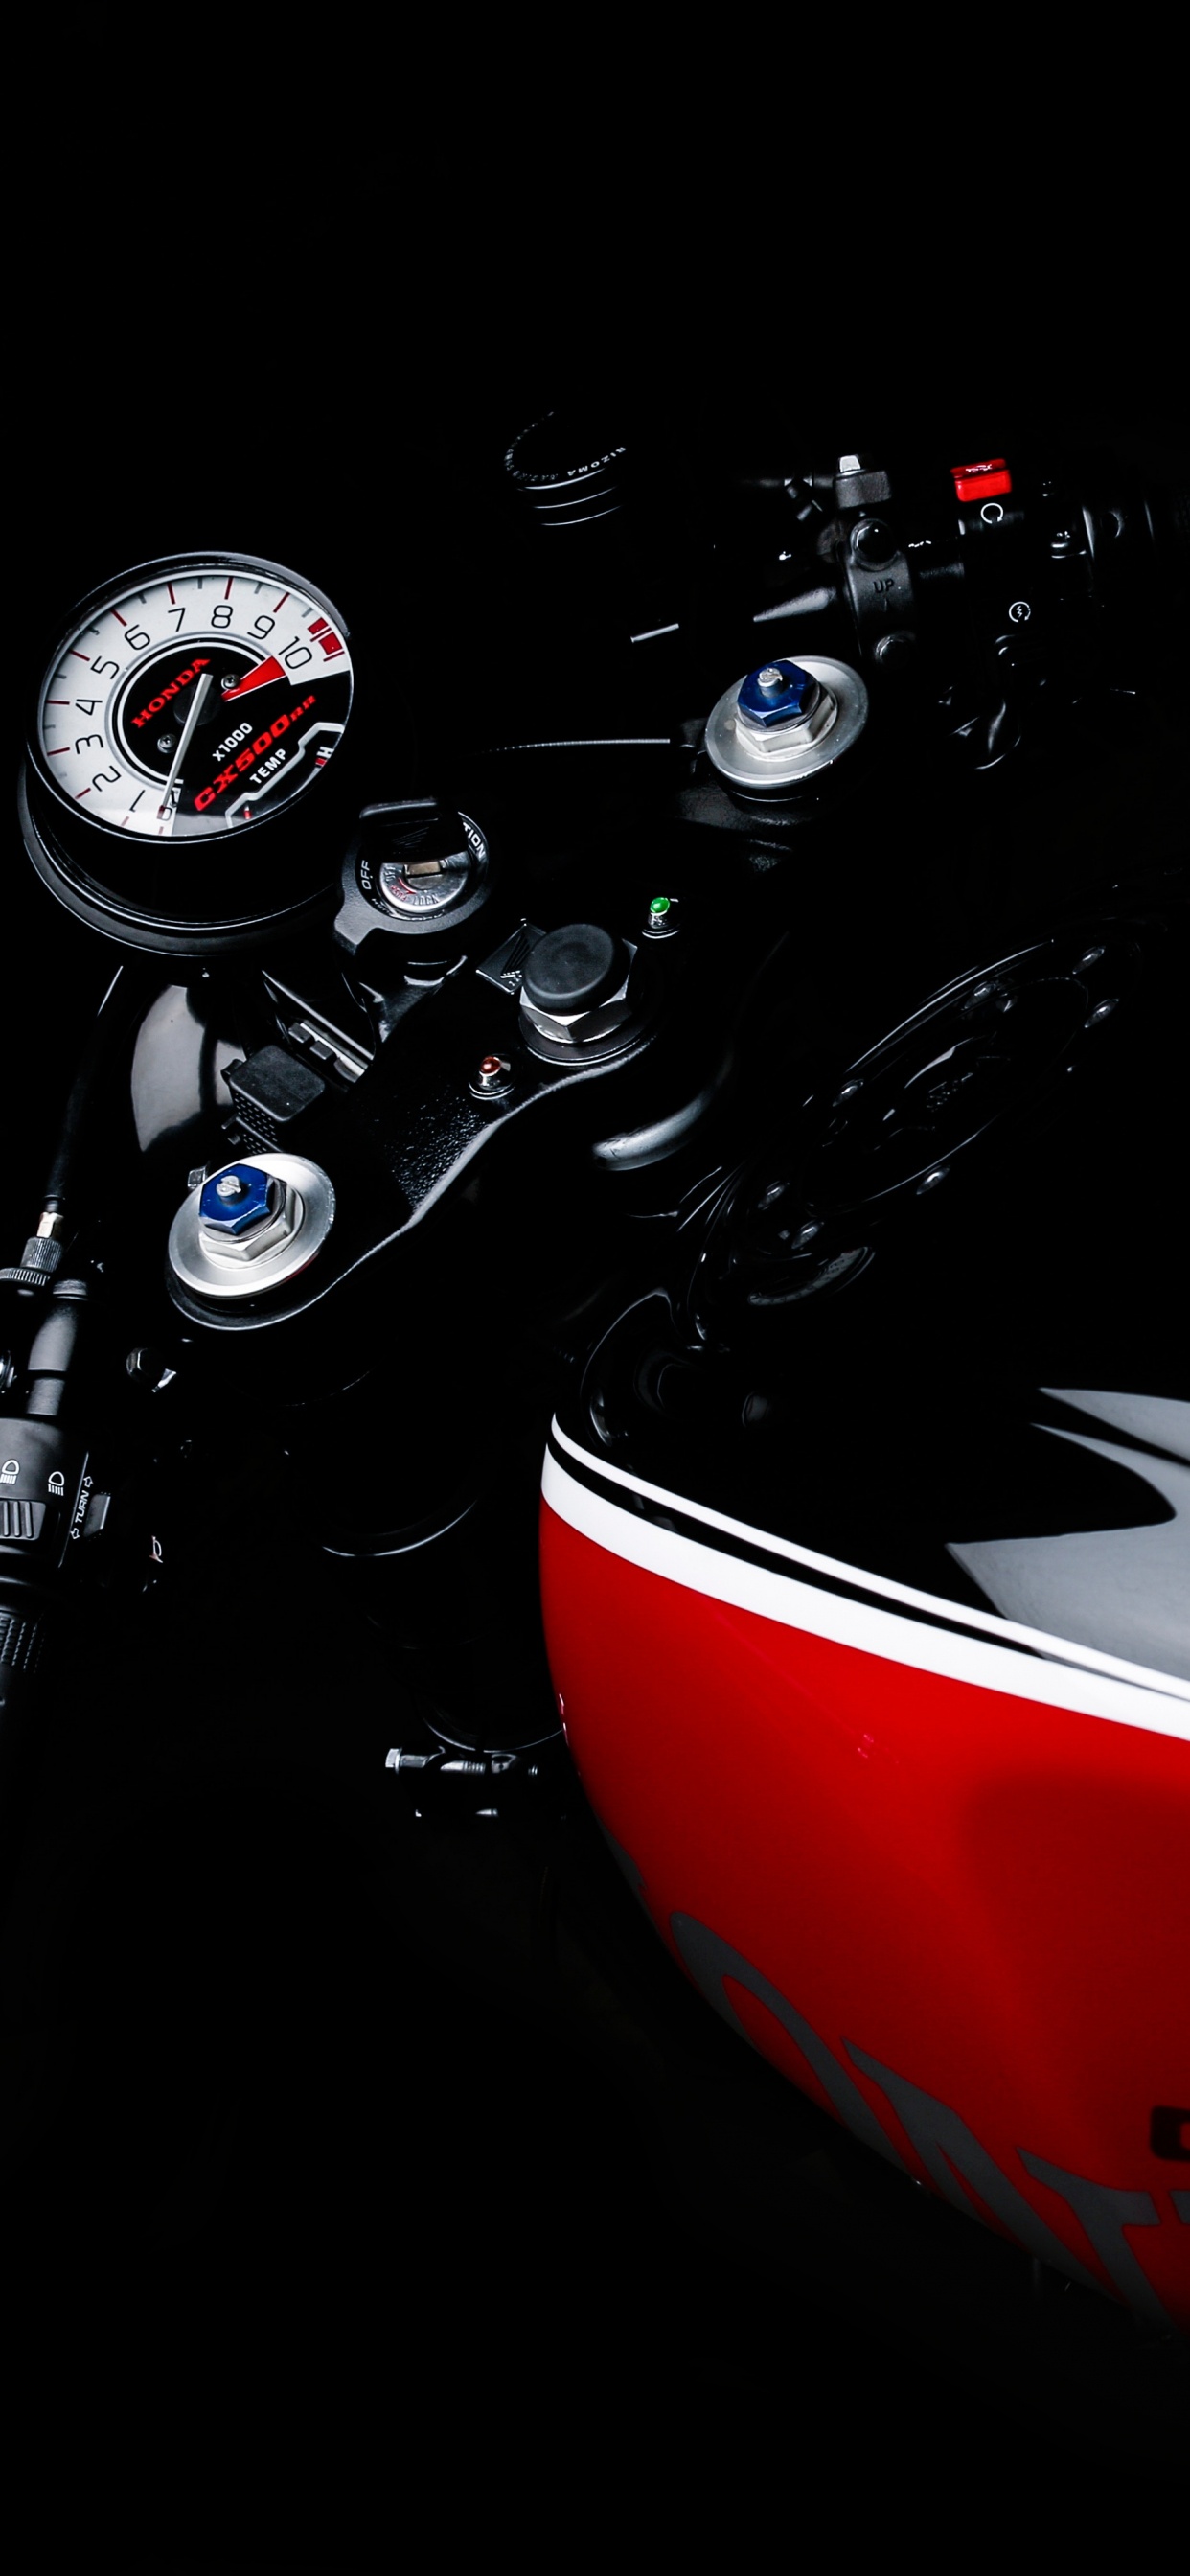 定义的摩托车, Caf的赛车手, 车灯, 图形设计, 摩托车配件 壁纸 1242x2688 允许